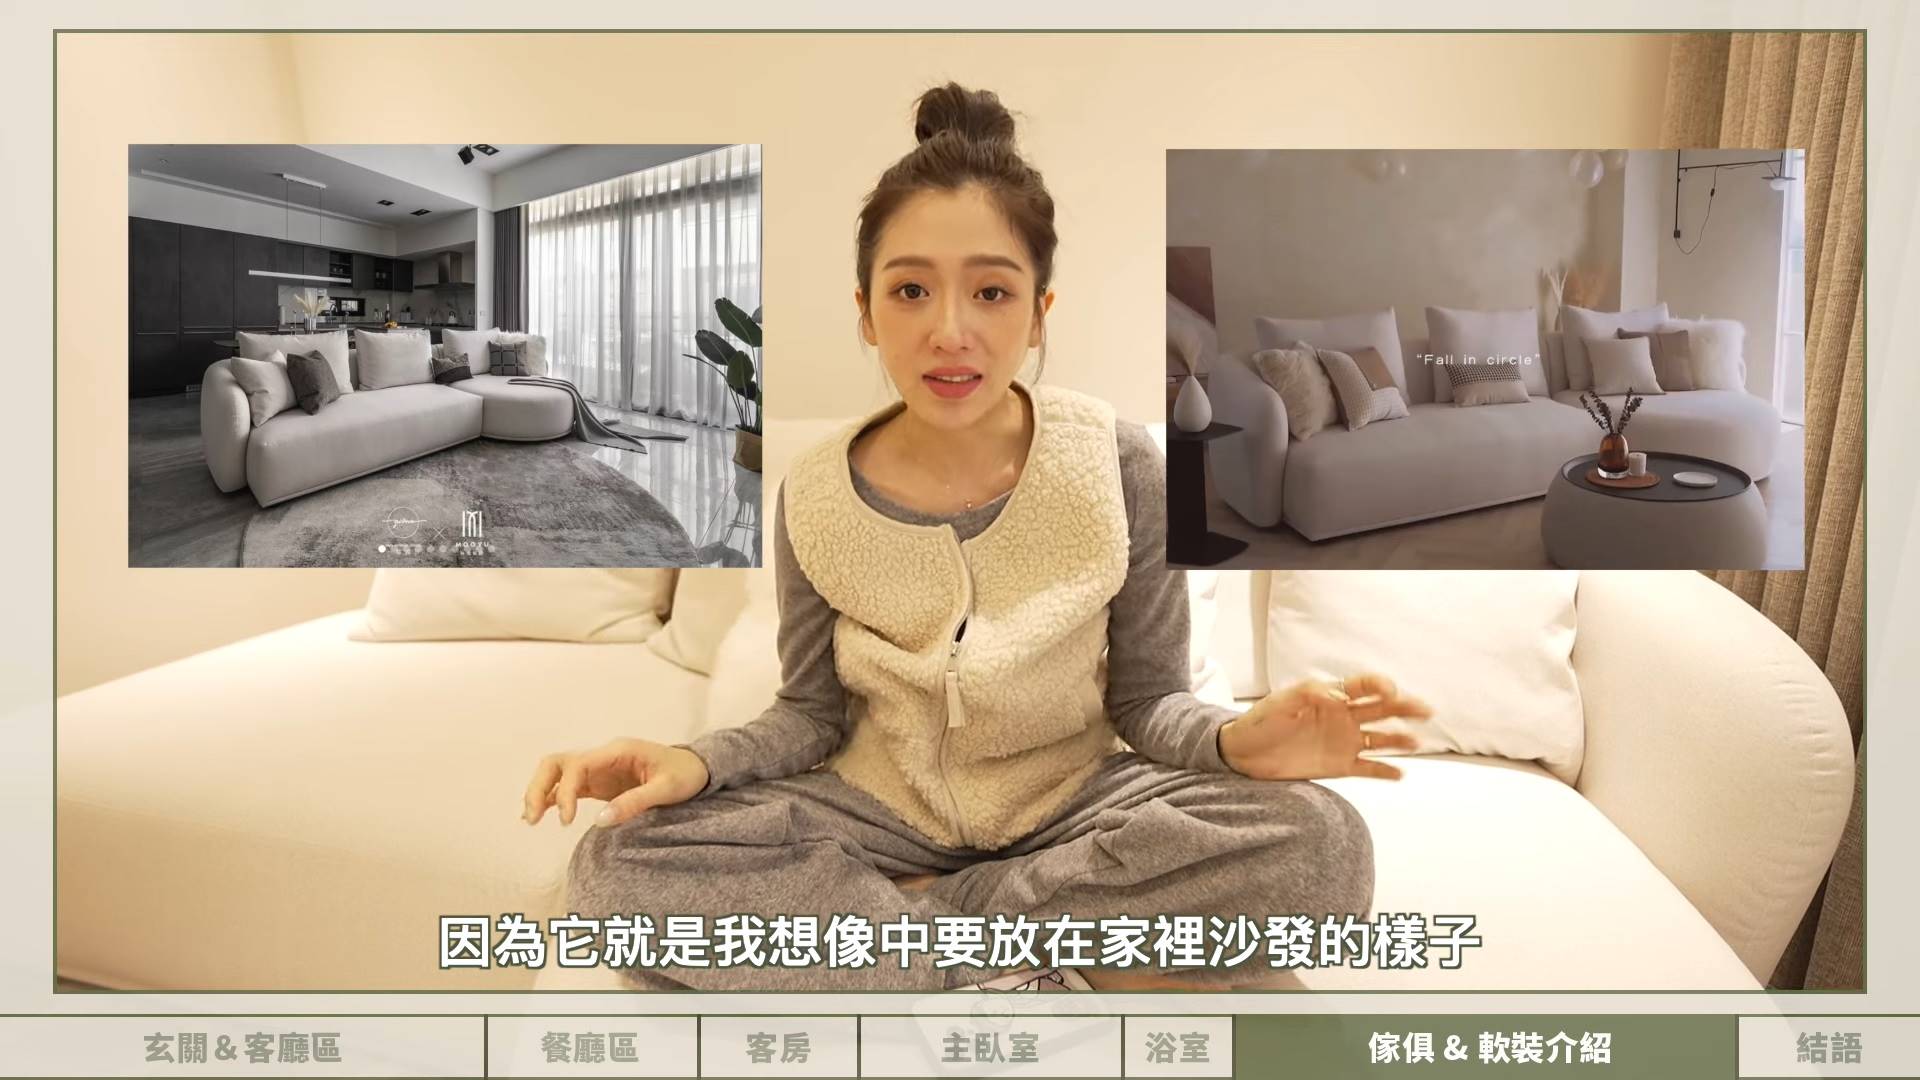 逸歡在台北市買下一間原室內格局「三房一廳兩衛」的房子，經過近三個月的施工，近日她大方在個人YouTube頻道上開箱裝潢後的成果。